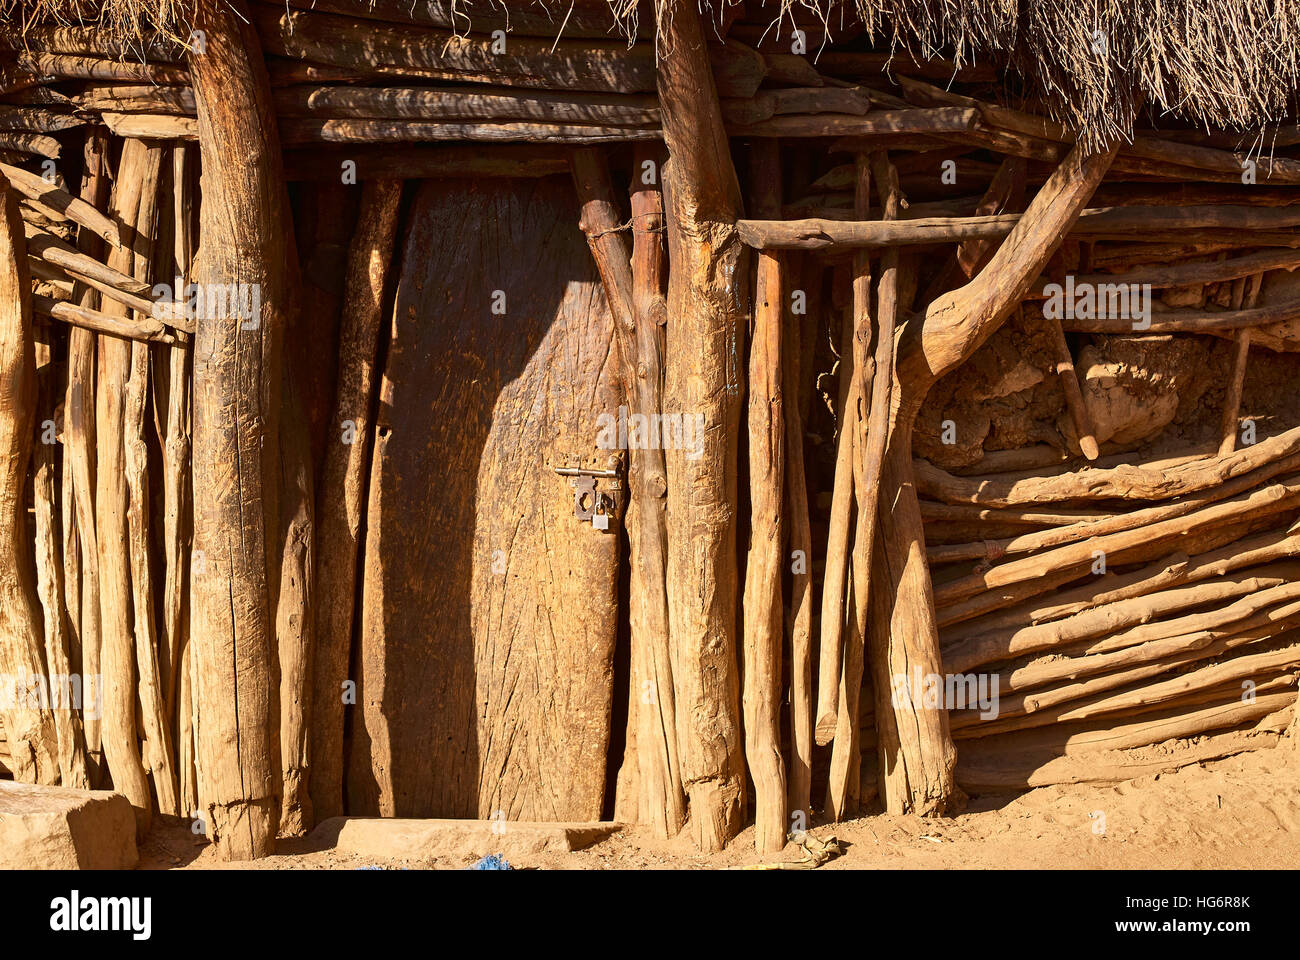 Eingang einer indigenen afrikanischen Hütte, Bautechniken der verschiedenen ethnischen Gruppen kombinieren Stockfoto